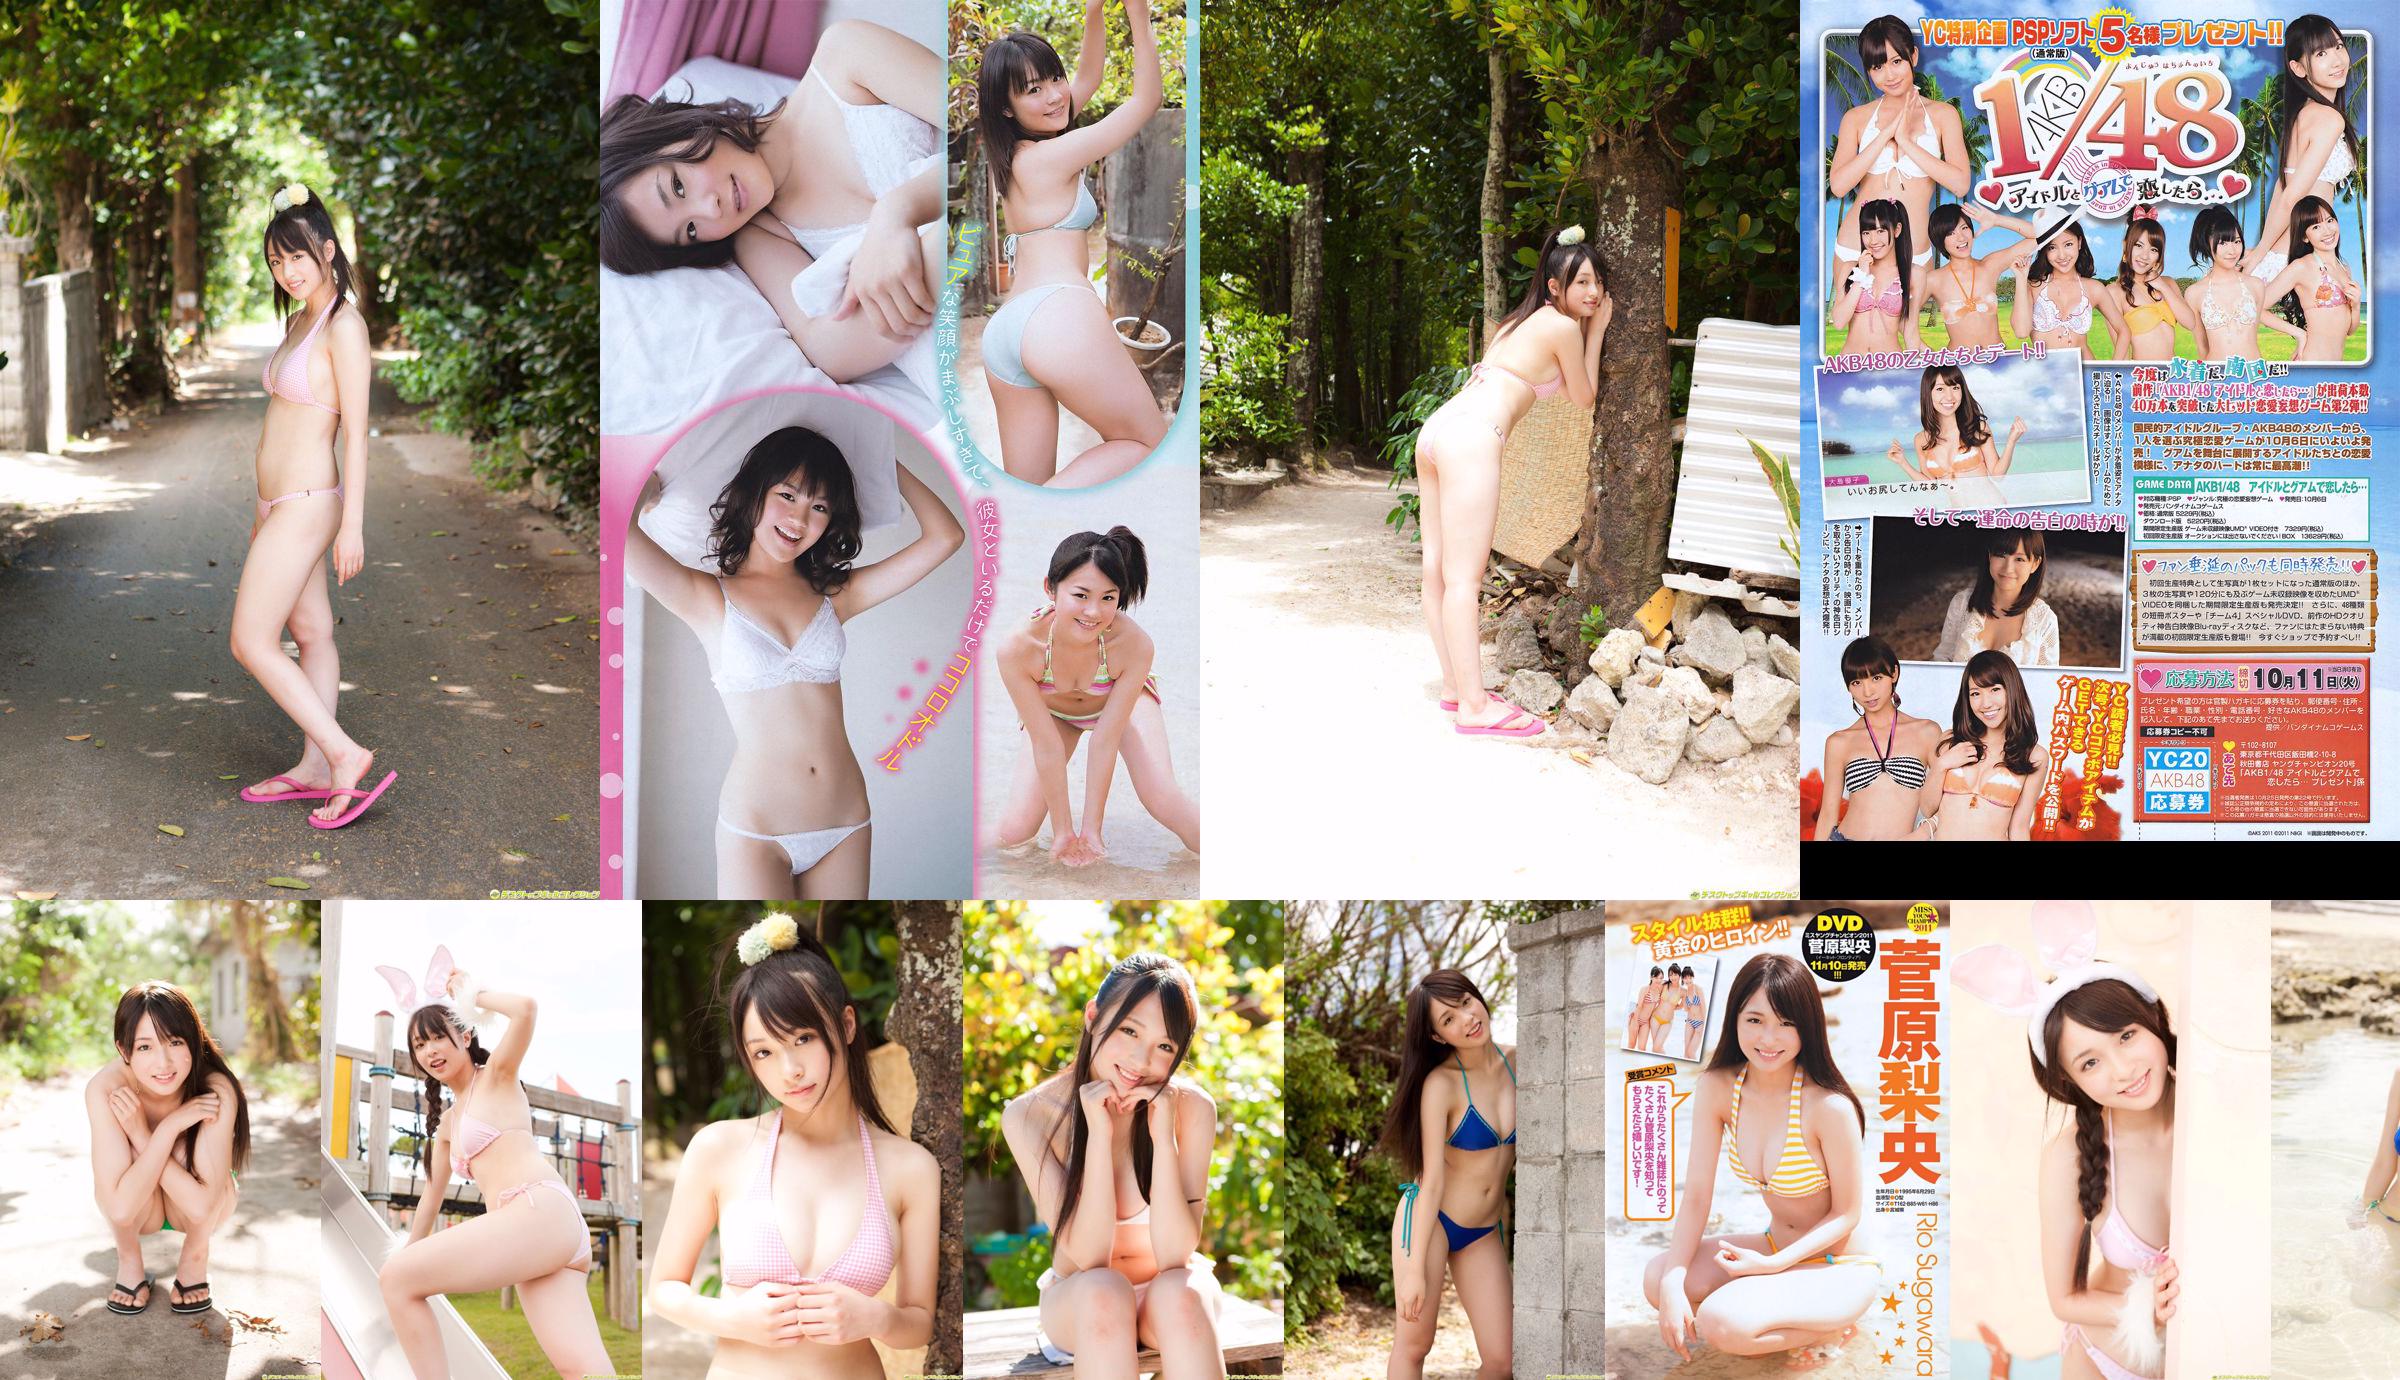 [Juara Muda] Sugawara Risa, Horikawa Mikako, Matsushima no atau Majalah Foto No. 20 2011 No.2e23f6 Halaman 7